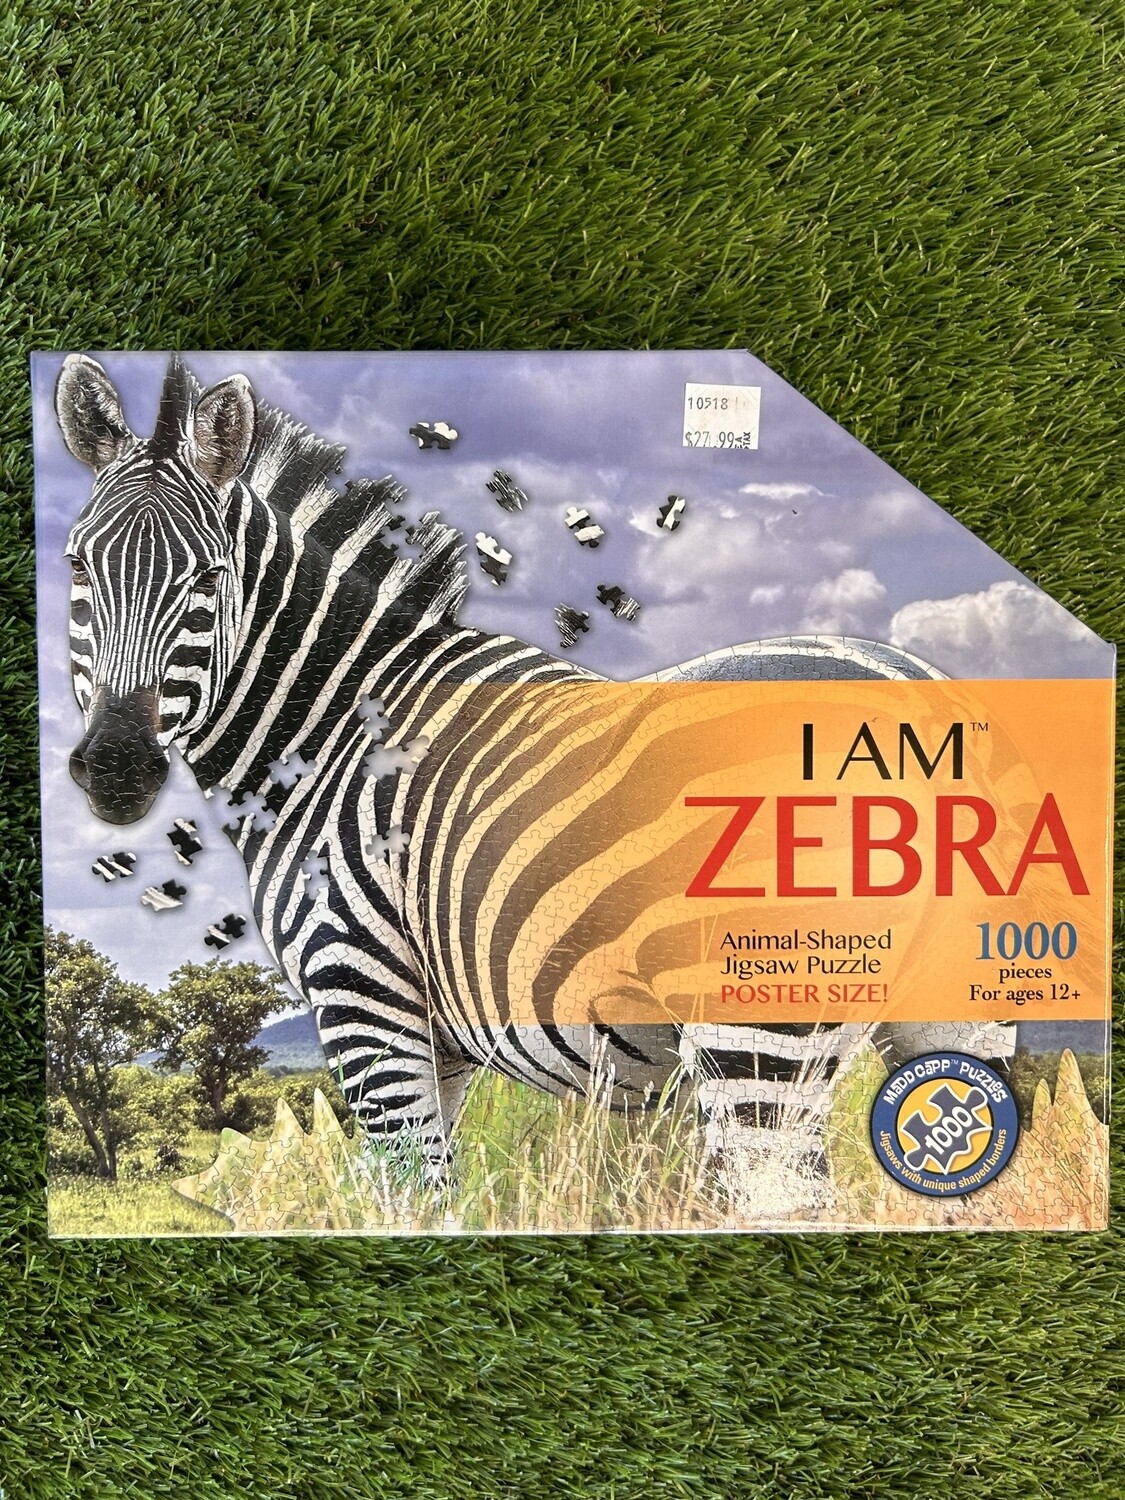 I AM ZEBRA 1000 Puzzle